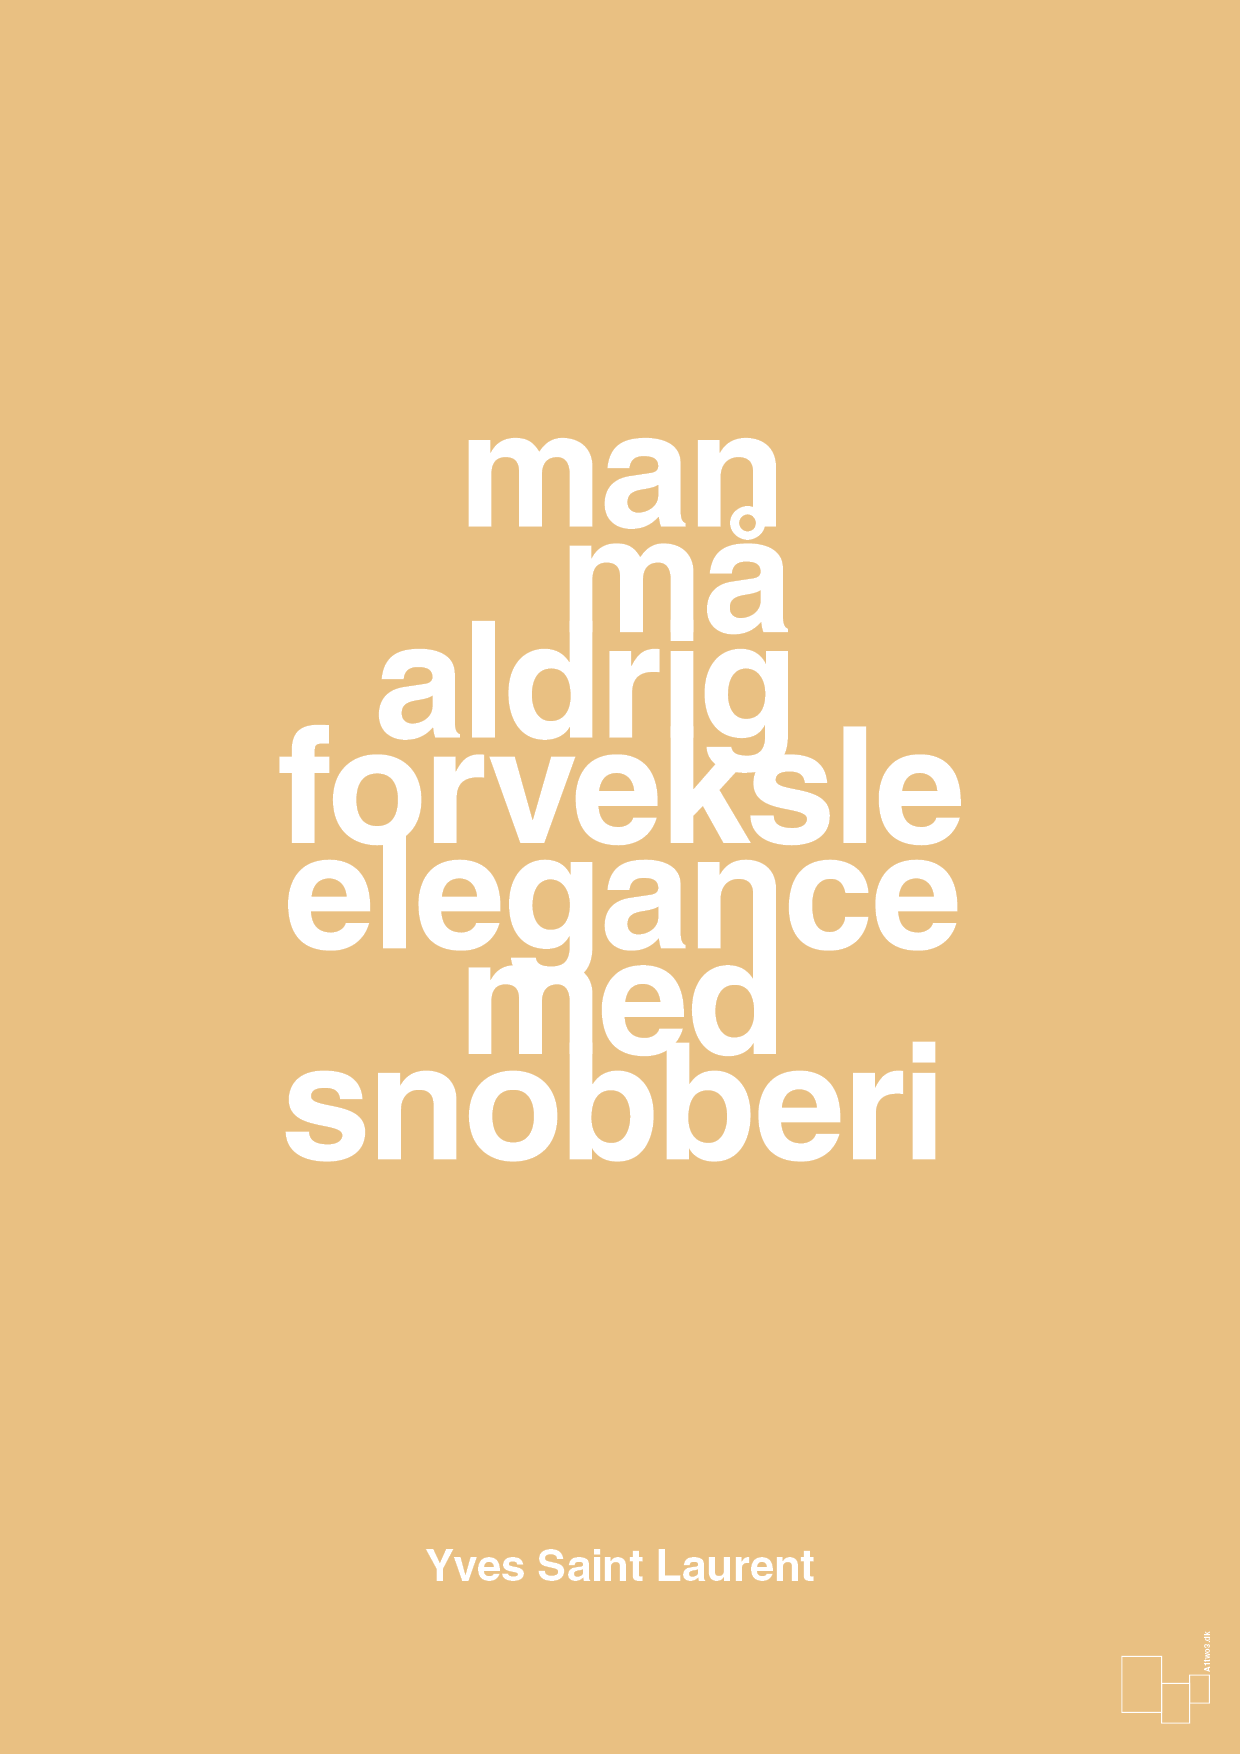 man må aldrig forveksle elegance med snobberi - Plakat med Citater i Charismatic